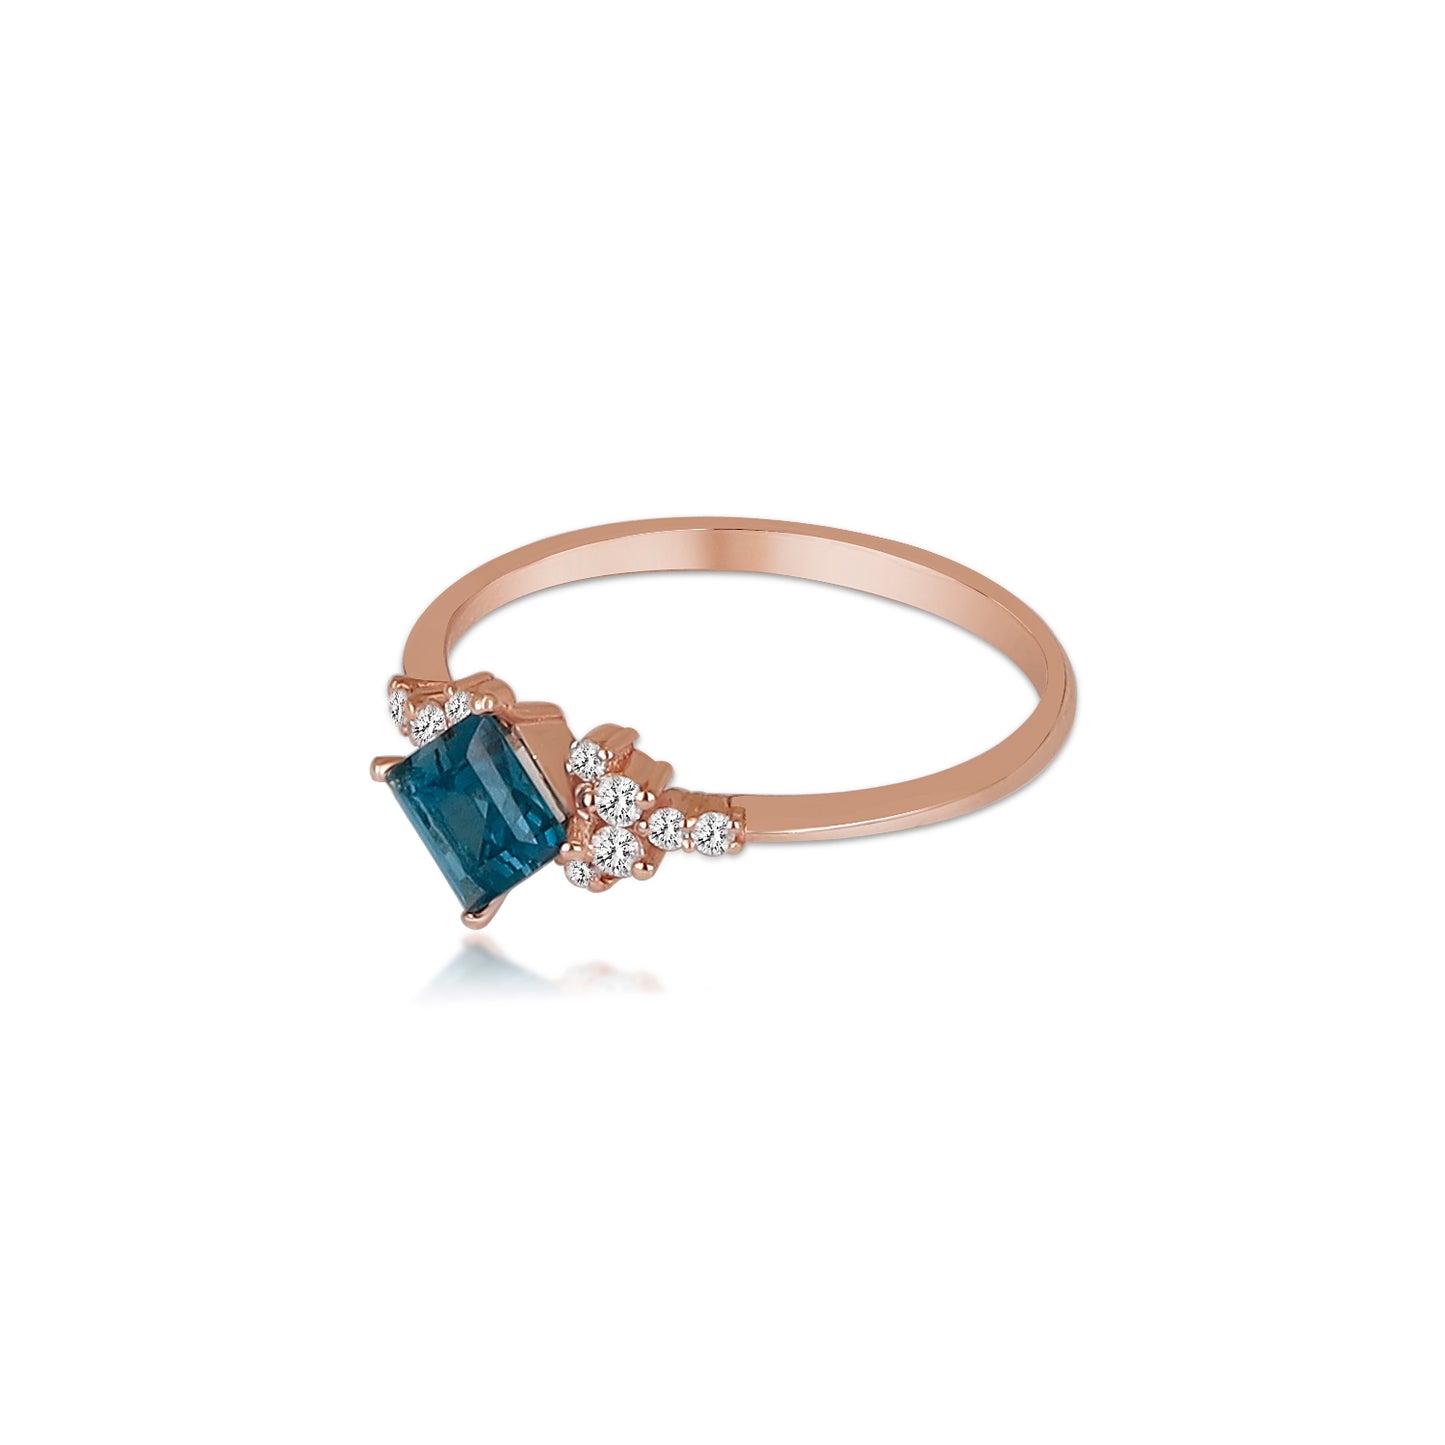 14k Gold Diamond Blue Ring, London Topaz Ring, Blue Topaz Ring, Gold Stacking Ring, November Month Ring, Birthstone Ring, Gift For Her